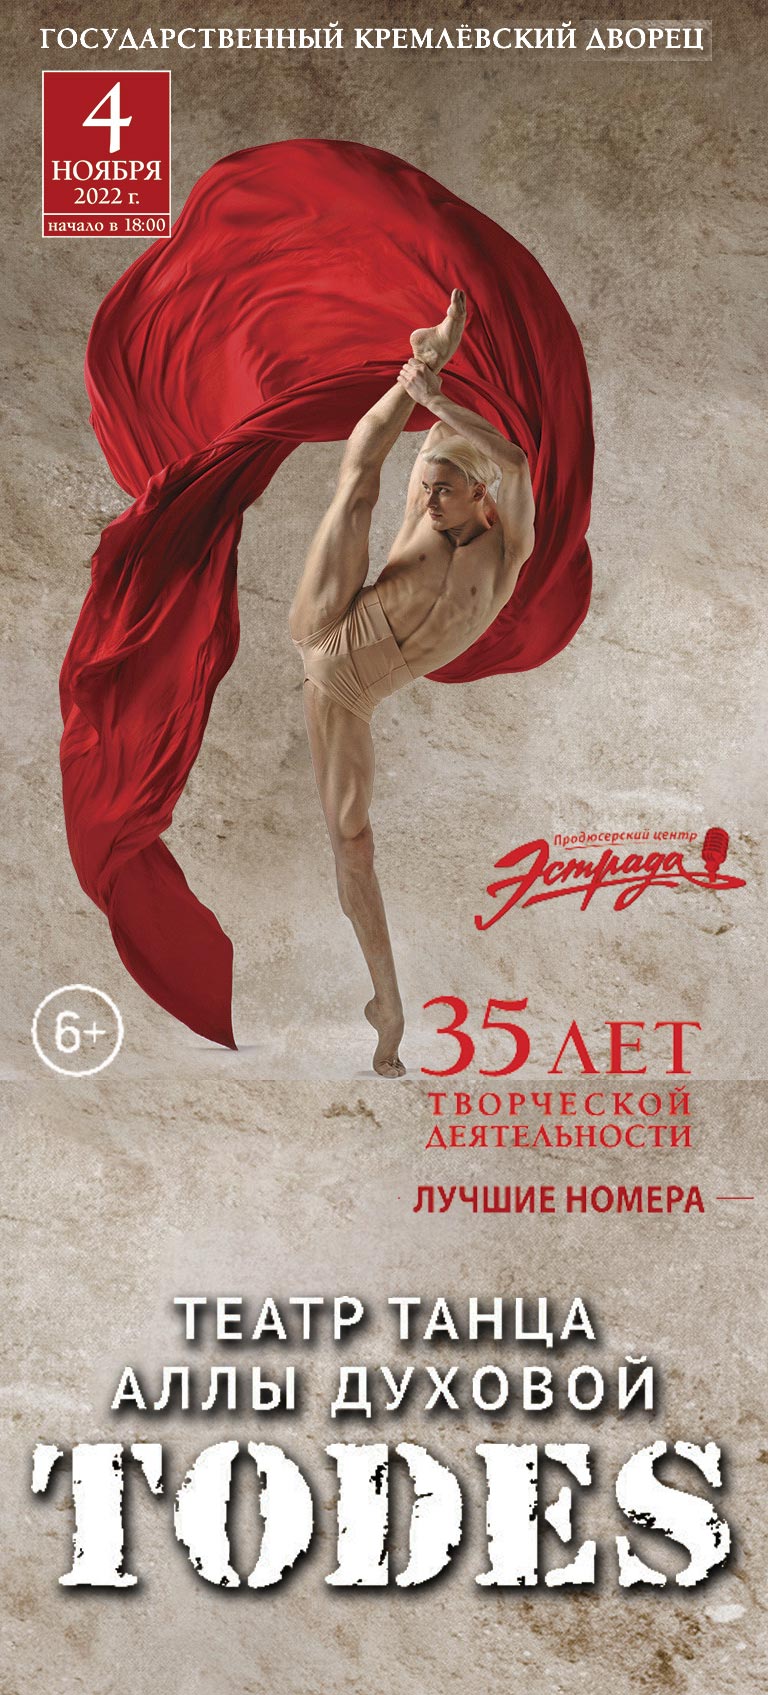 Купить Билеты на балет Аллы Духовой Todes 2022 в Государственном Кремлевском Дворце